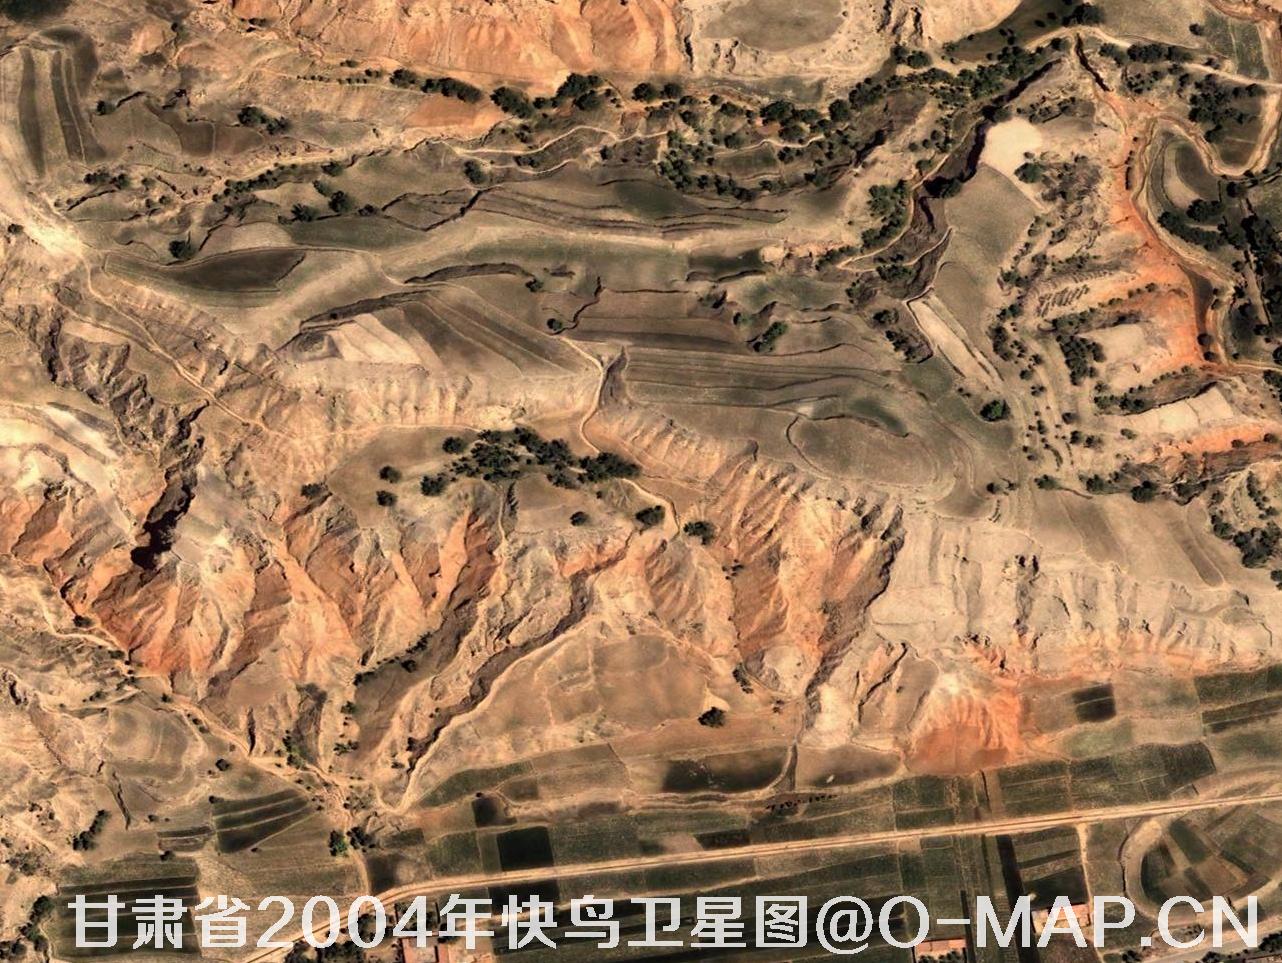 快鸟卫星2004年拍摄的甘肃省东家乡卫星图